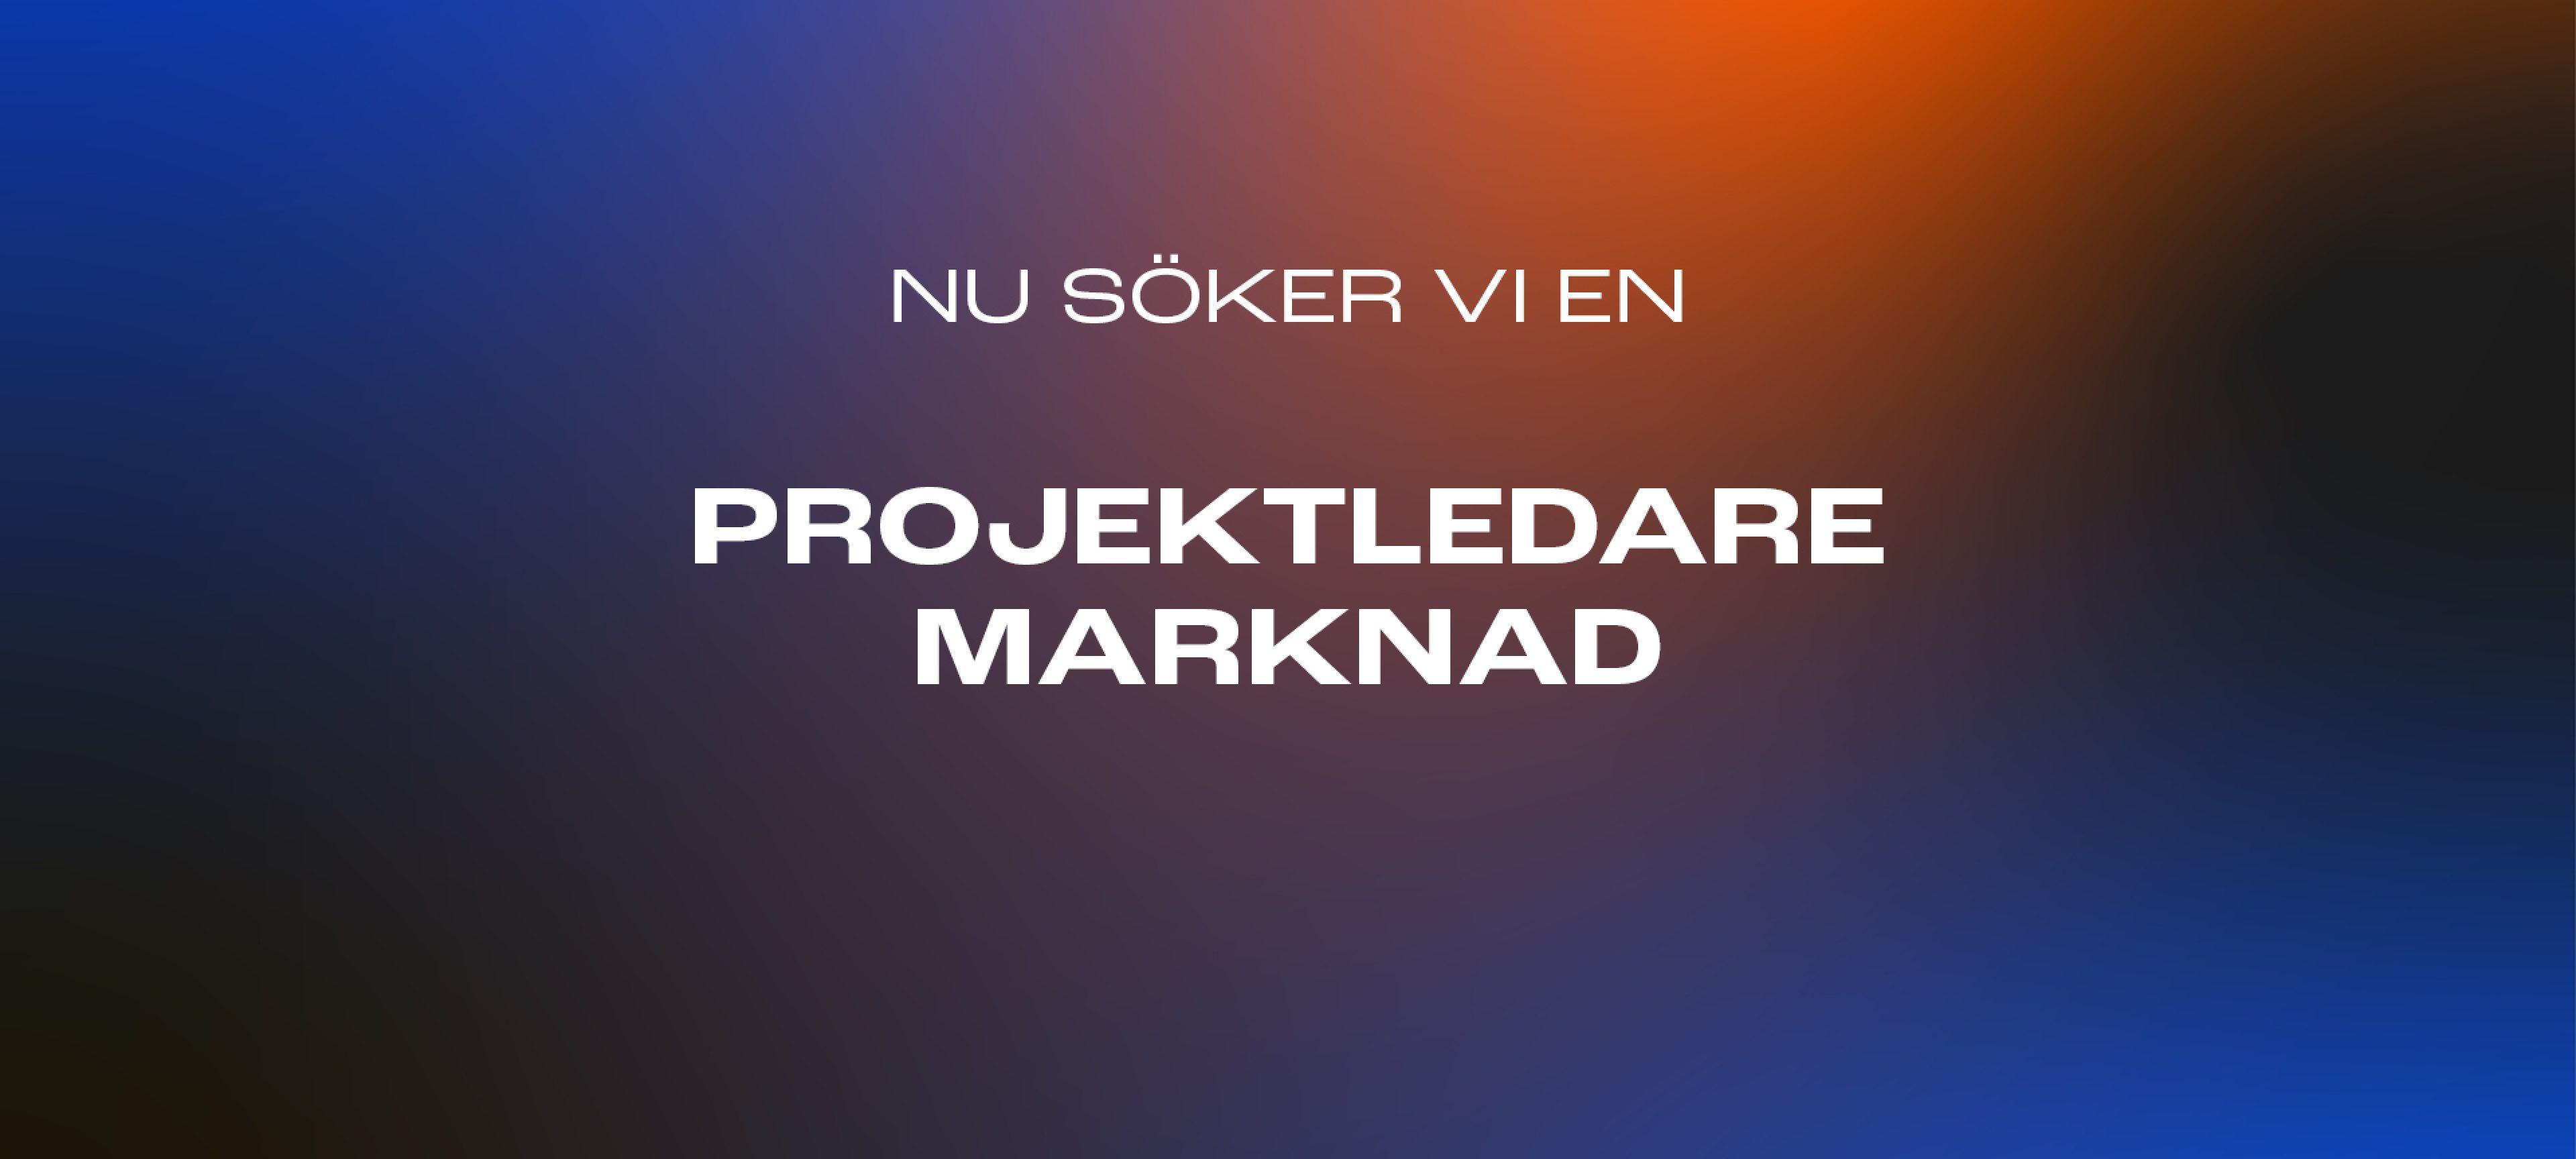 Projektledare Marknad_annons